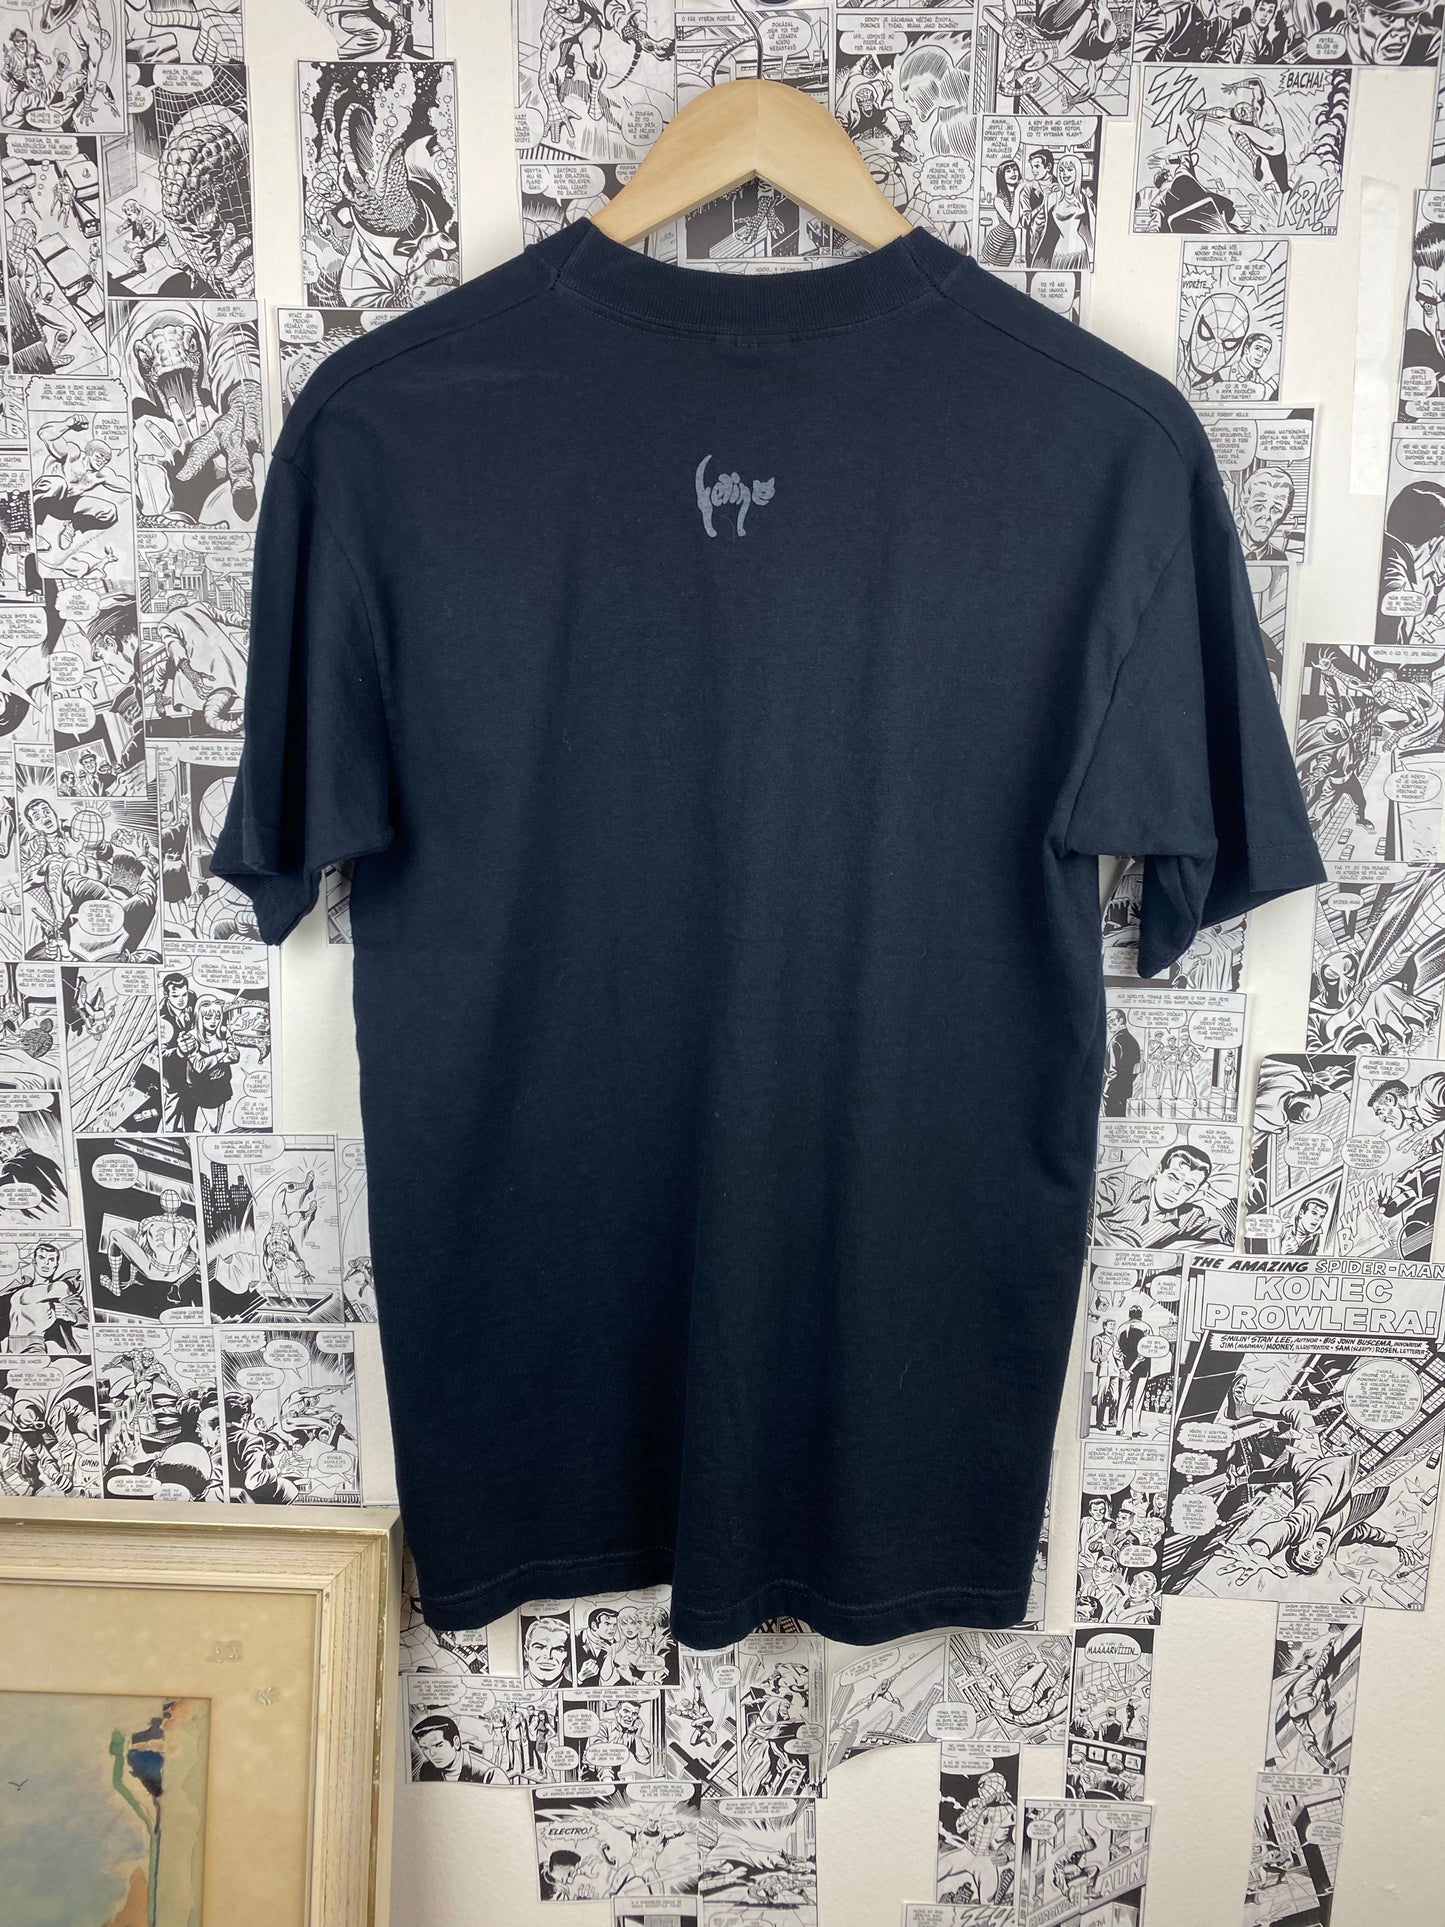 Vintage Cat 90s t-shirt - size M